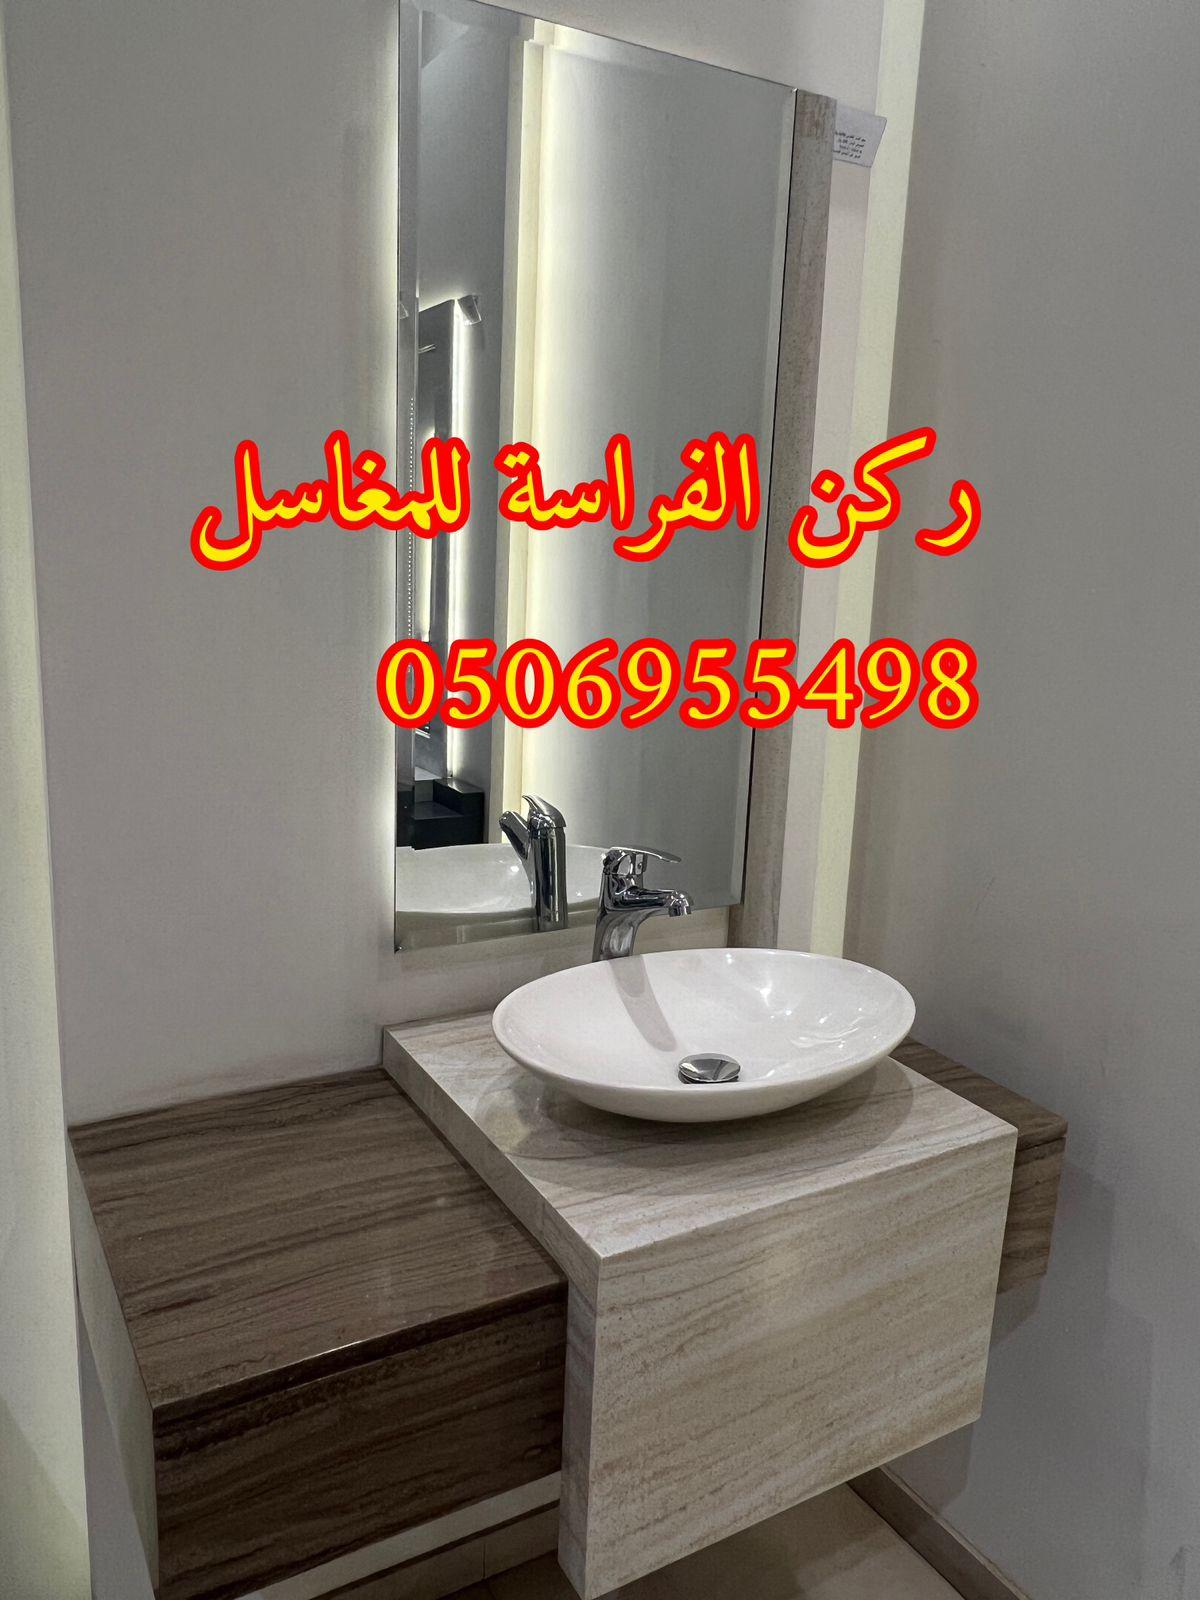 الرياض - مغاسل حمامات رخام مودرن فخمة في الرياض,0506955498 289089458